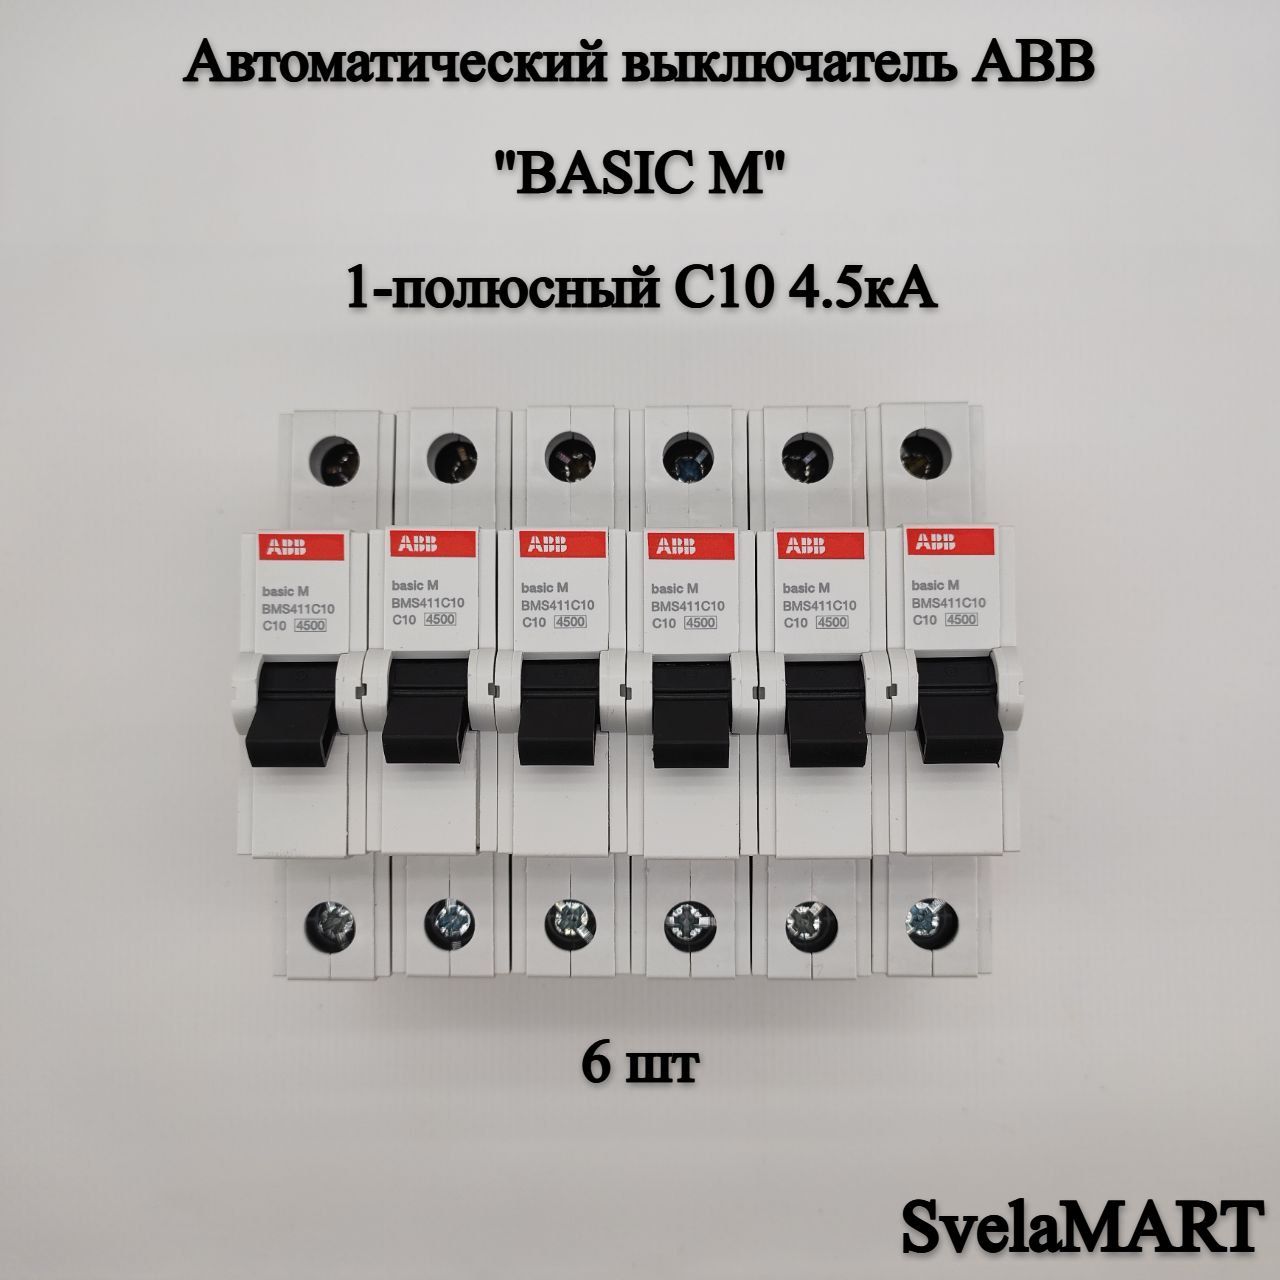 Автоматический выключатель abb 1 полюсный